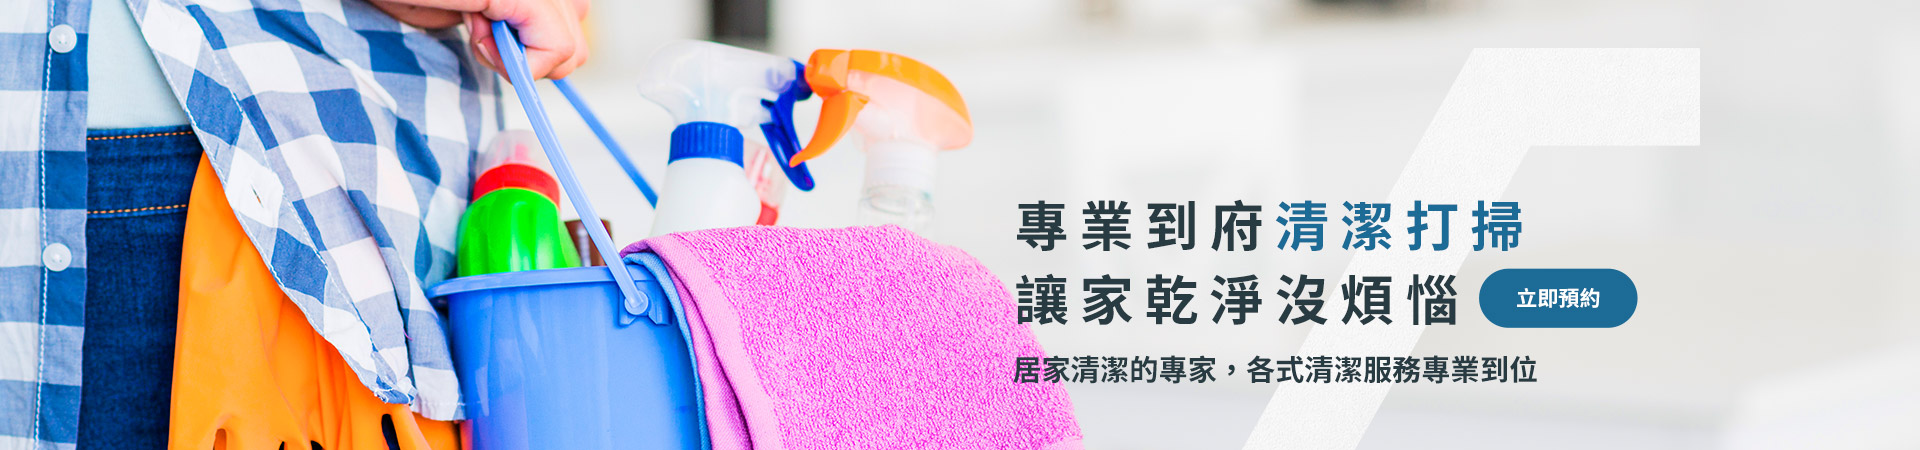 台南居家清潔安全專業